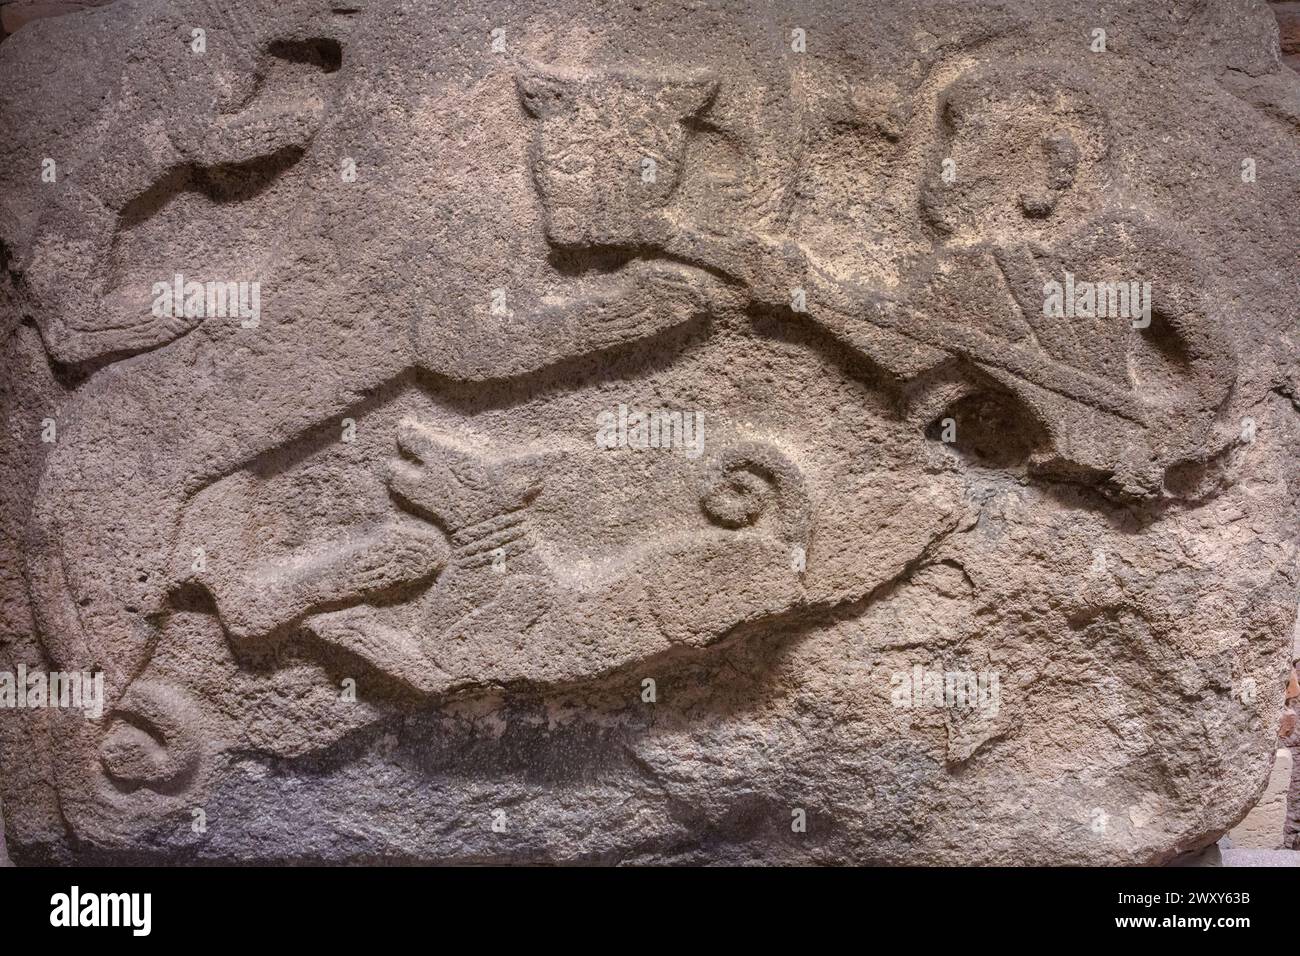 Relieve con caza de leones, siglo XIV a.C., basalto, Museo de Civilizaciones Anatolianas, Ankara, Turquía Foto de stock